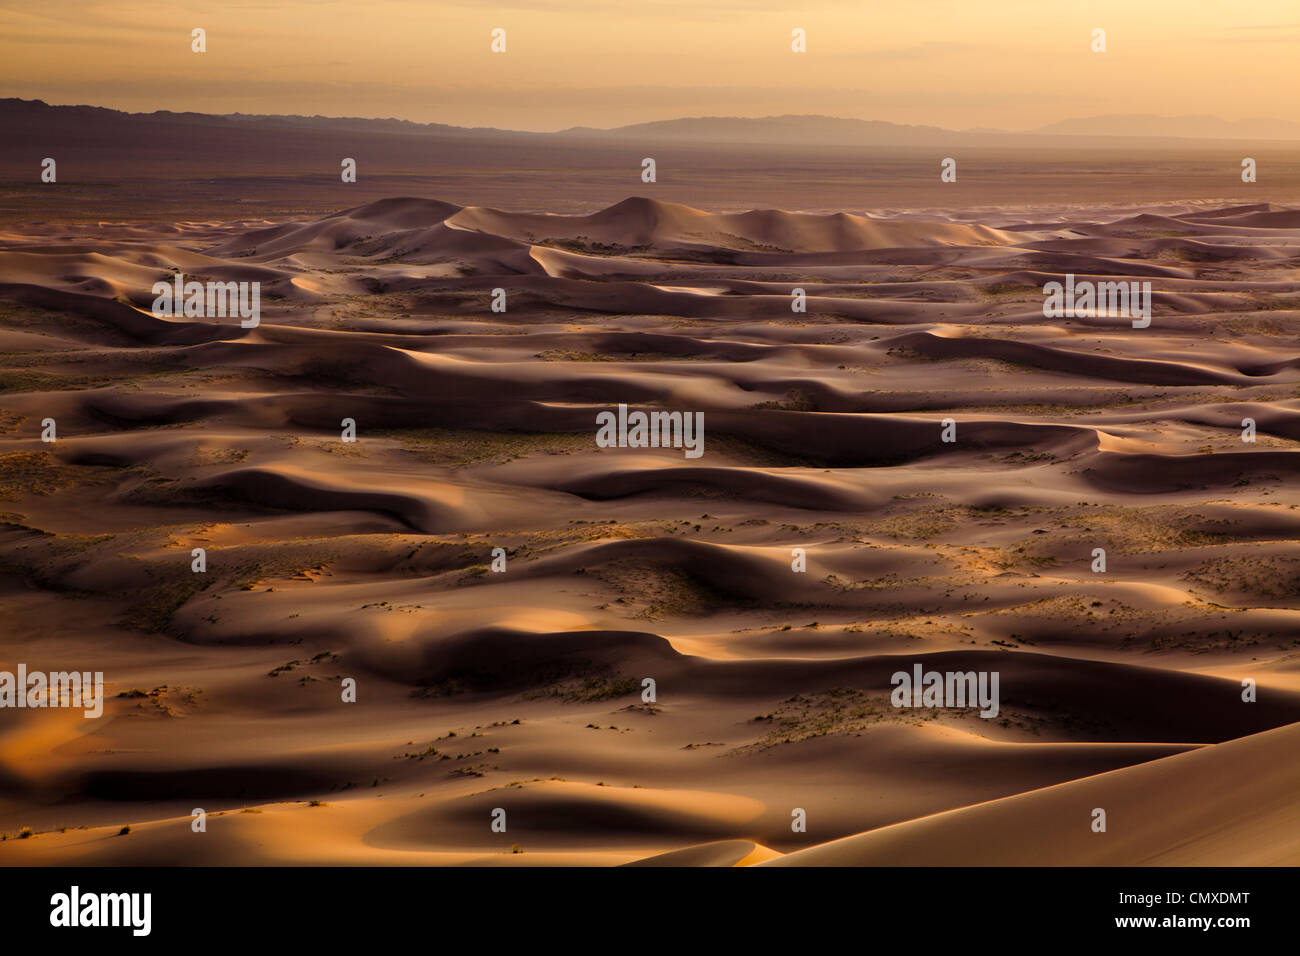 The Khongor sand dune in Gobi desert, Mongolia Stock Photo